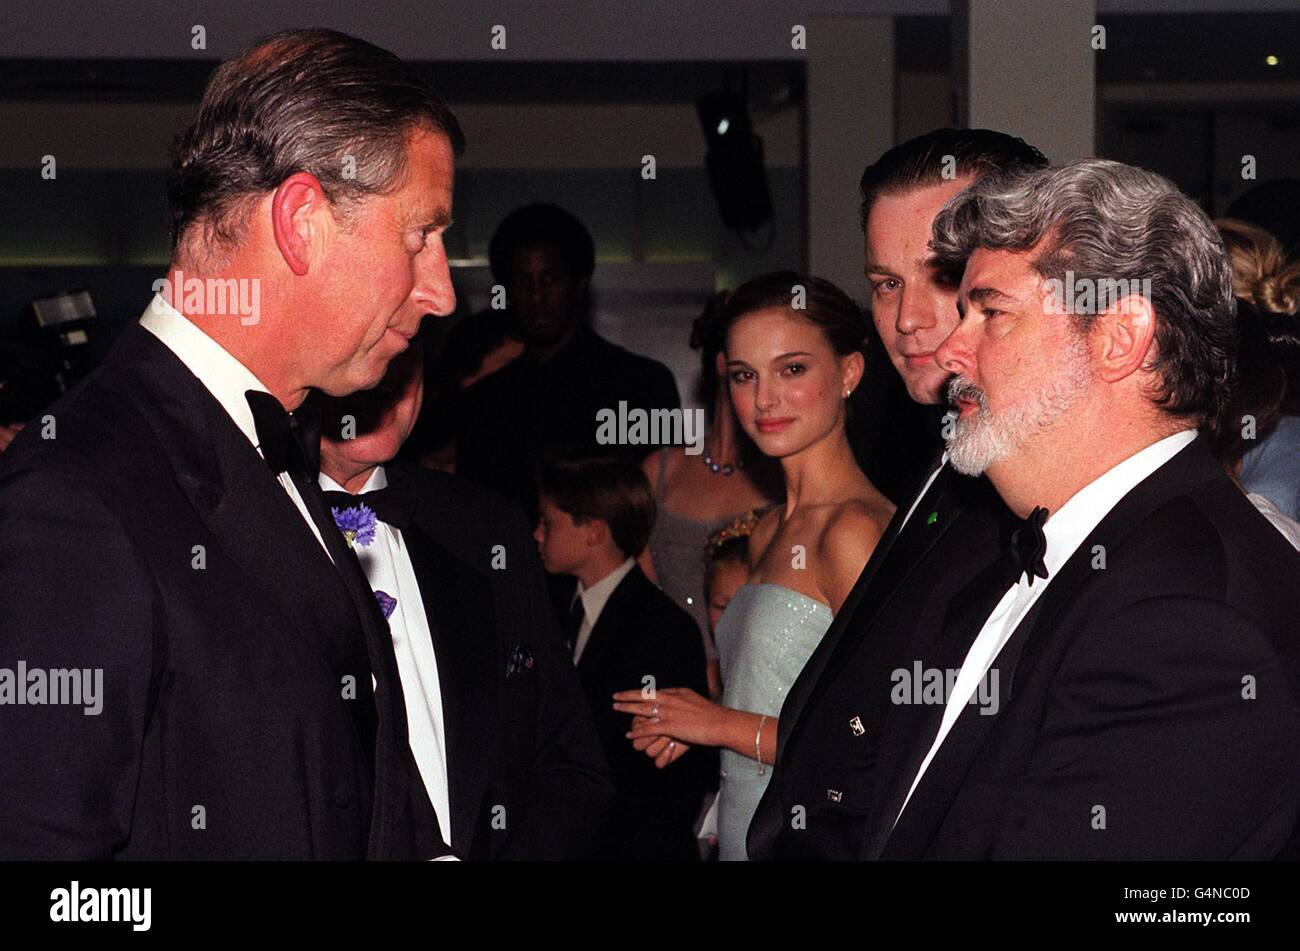 Prinz Charles (L) begrüßt Regisseur George Lucas (R), während die Stars Ewan (2. R) McGregor und Natalie Portman (3. R) die Royal Premiere von Star Wars: Episode 1, The Phantom Menace, am Leicester Square in London betrachten. Stockfoto